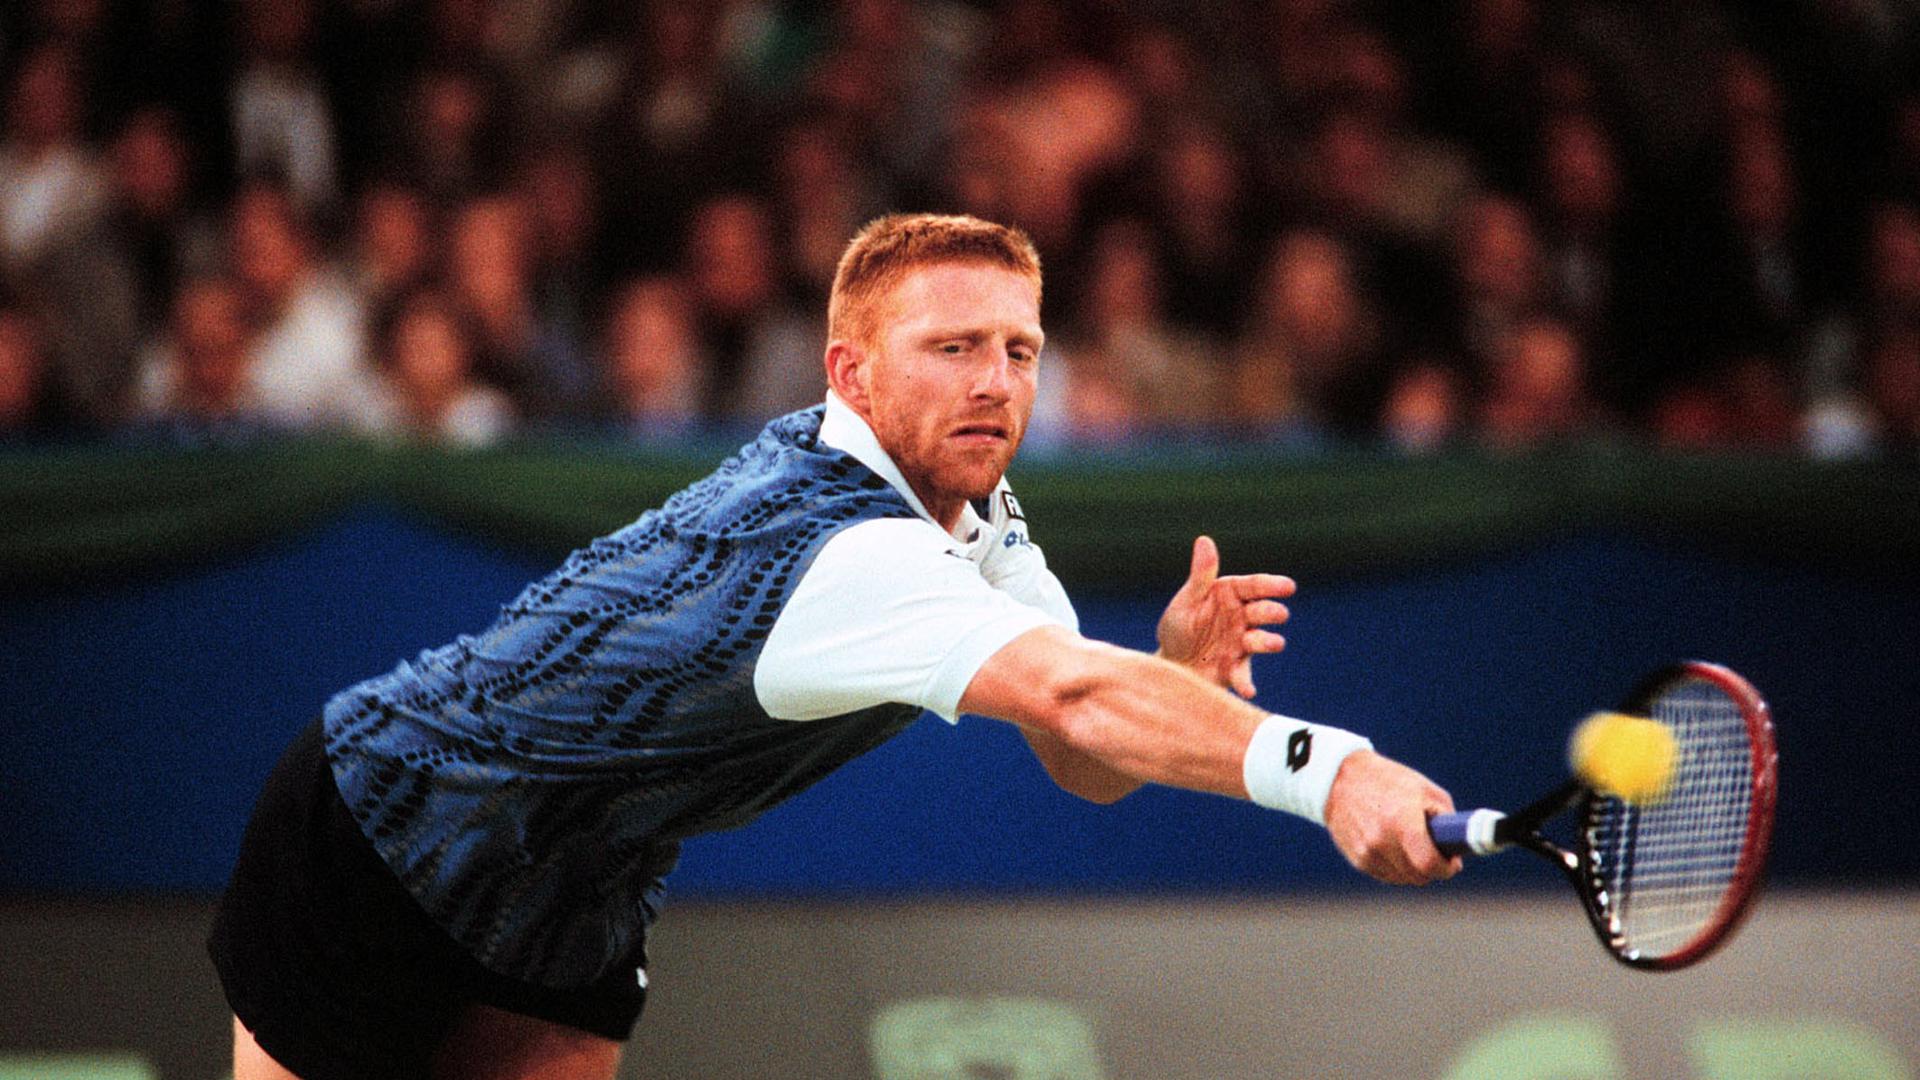 Boris Becker in der Karlsruher Europahalle beim Daviscup gegen Kroation im Februar 1995.